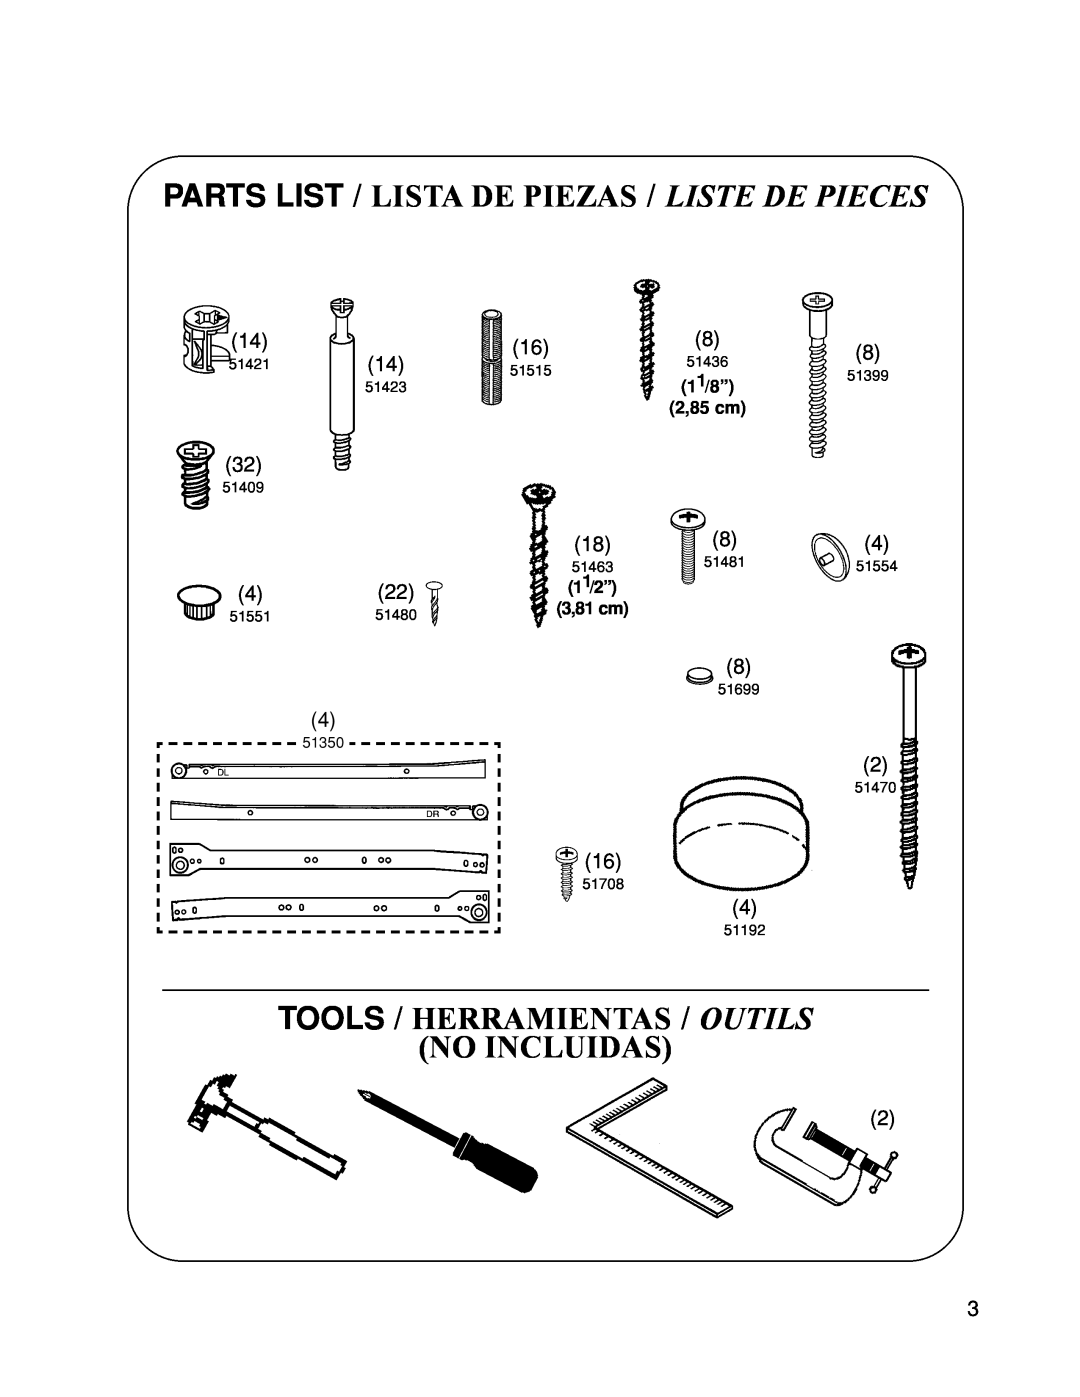 Closet Maid 12322 manual Tools / Herramientas / Outils No Incluidas, 11/8” 2,85 cm, 11/ 2 ” 3,81 cm 